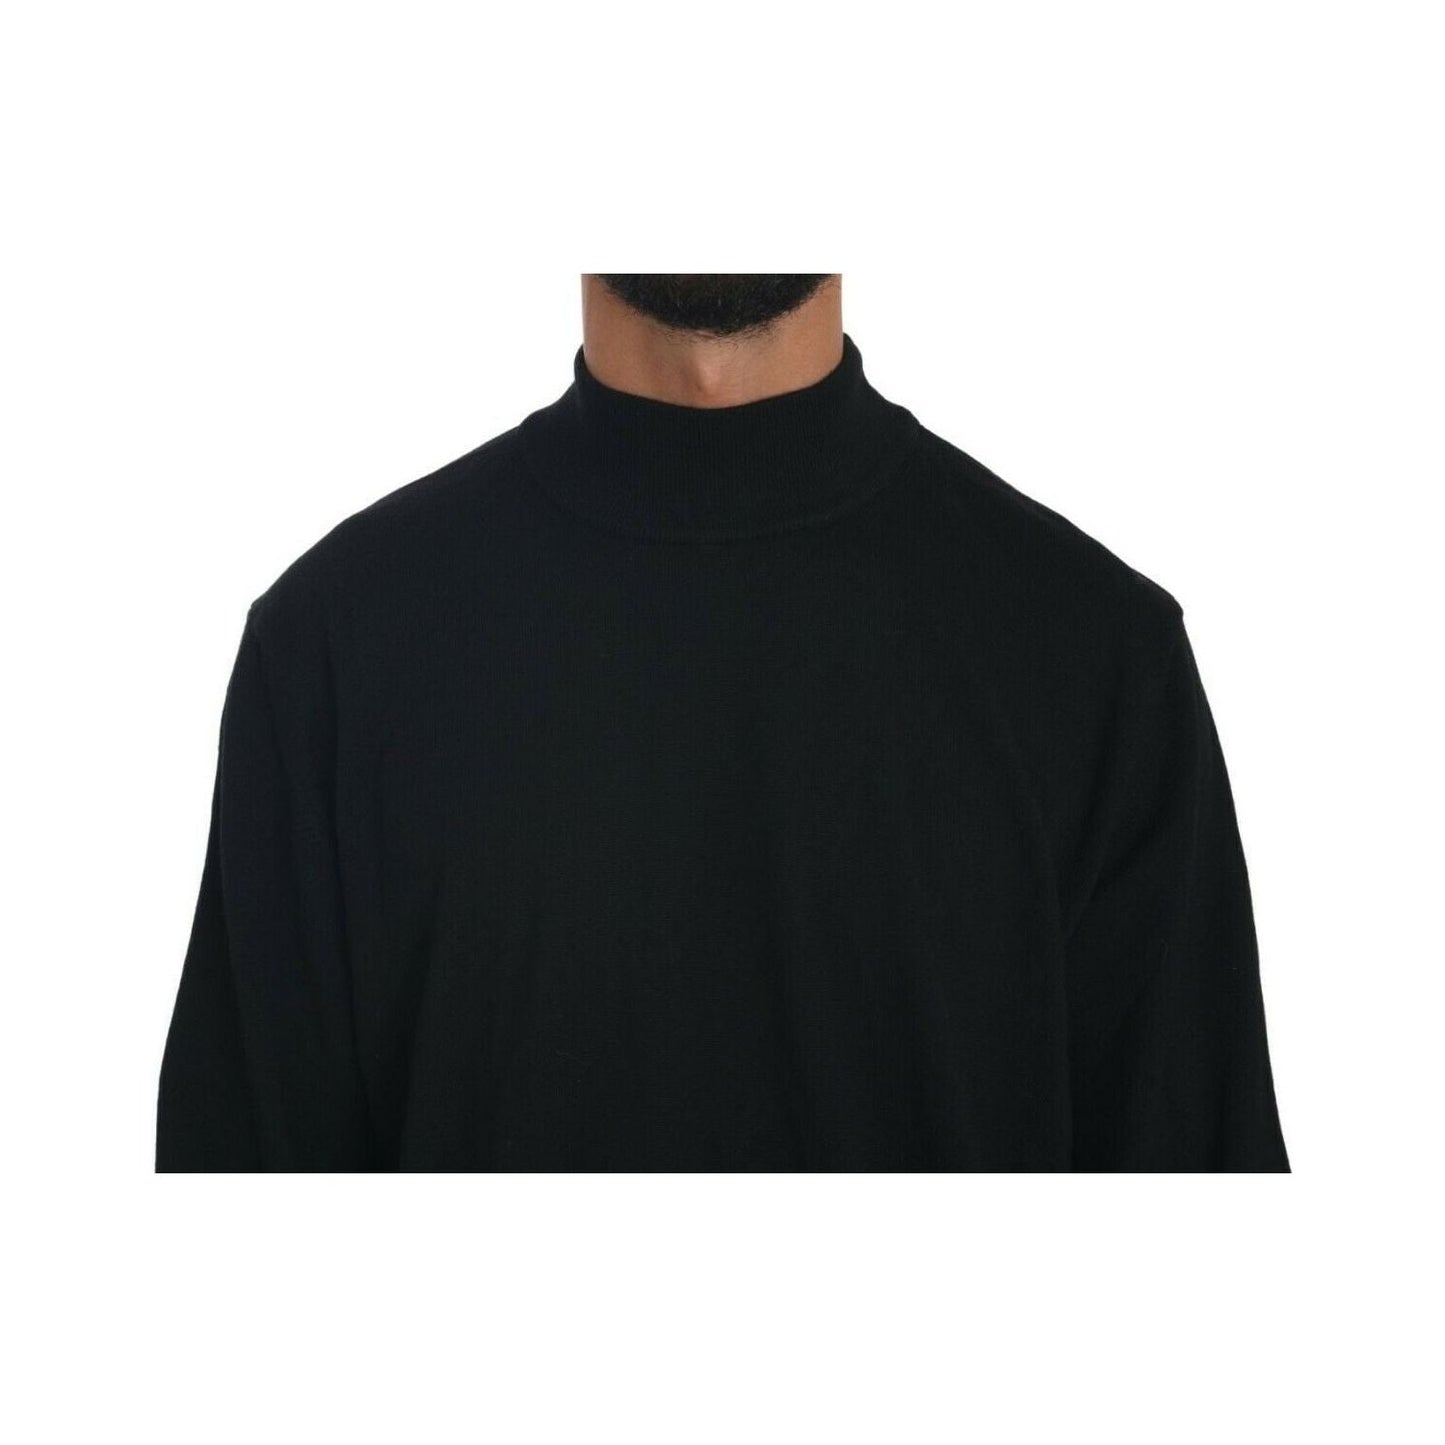 MILA SCHÖN Black Turtle Neck Pullover Top Virgin Wool Sweater black-turtle-neck-pullover-top-virgin-wool-sweater s-l1600-38-814dab83-789.jpg